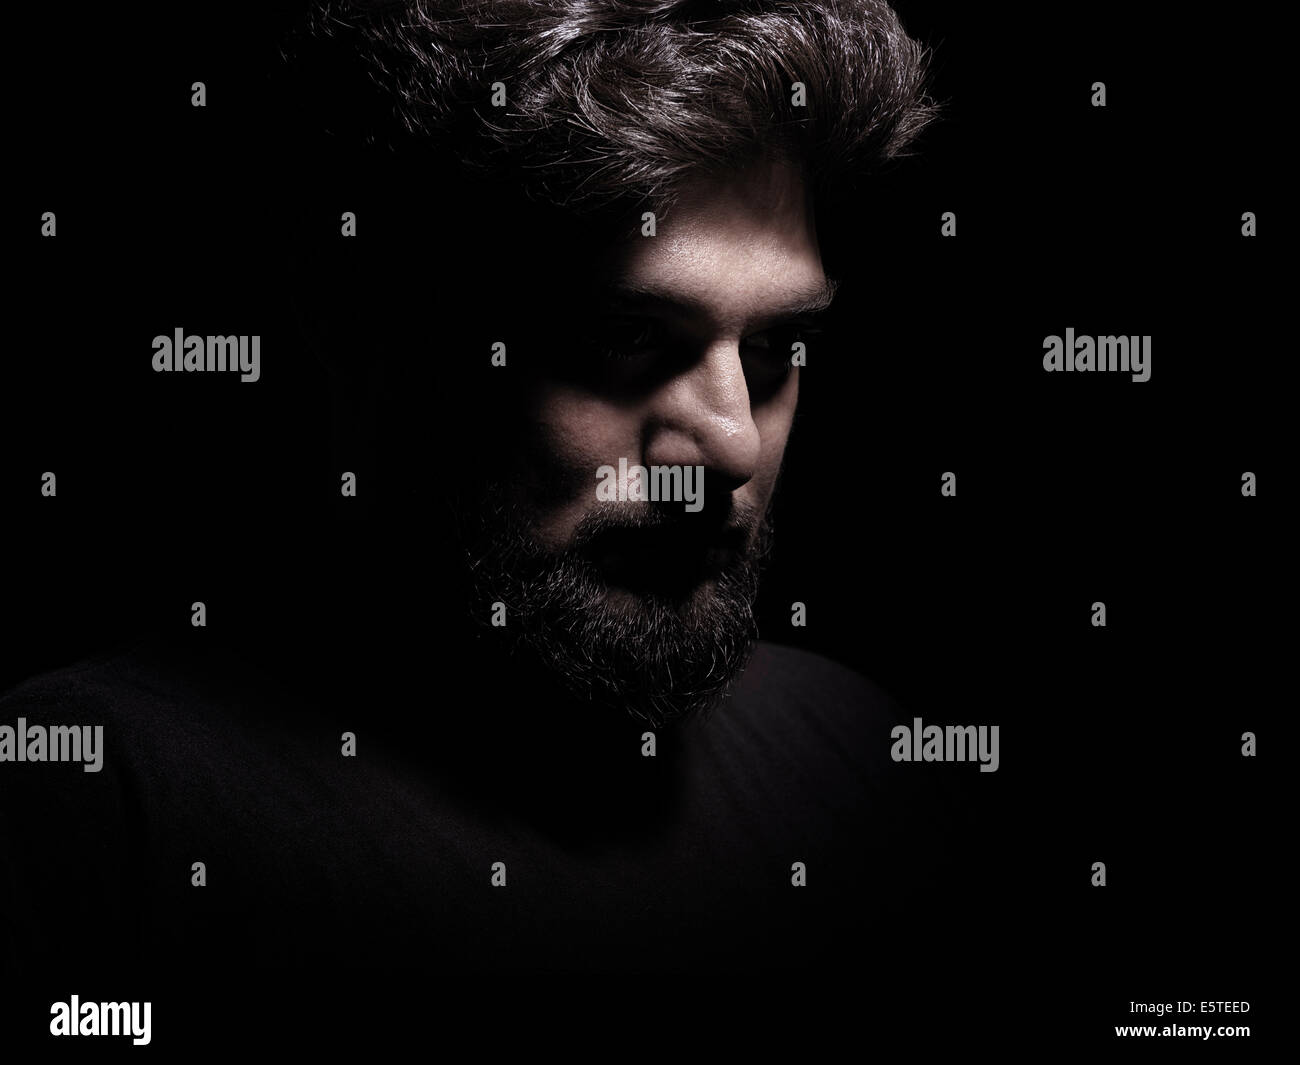 Lizenz erhältlich unter MaximImages.com - dramatisches schattenhaftes Porträt eines nachdenklichen Mannes isoliert auf schwarzem Hintergrund Stockfoto